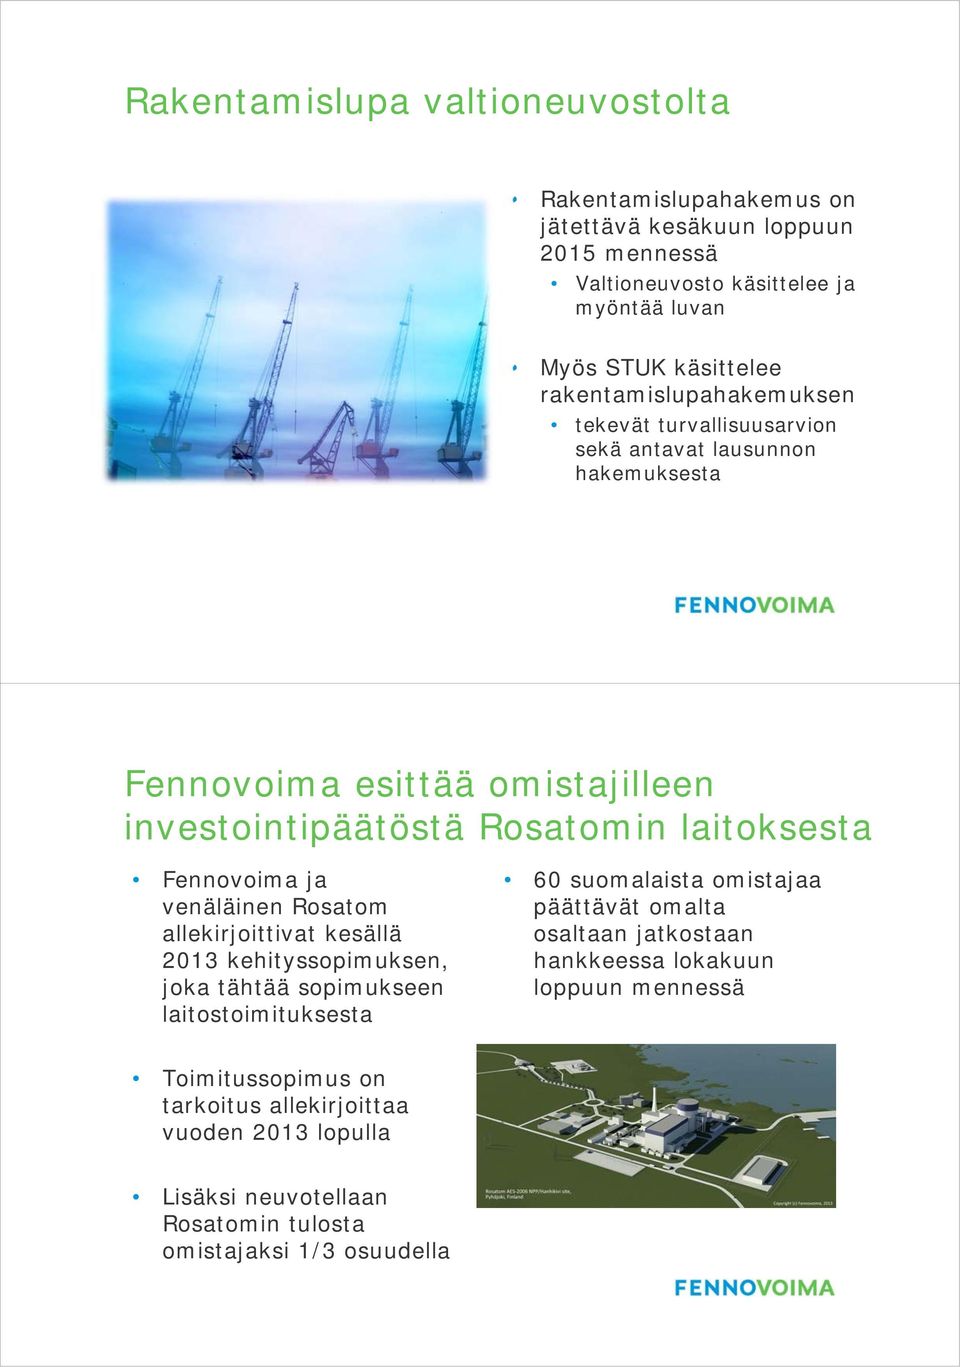 Fennovoima ja venäläinen Rosatom allekirjoittivat kesällä 2013 kehityssopimuksen, joka tähtää sopimukseen laitostoimituksesta 60 suomalaista omistajaa päättävät omalta